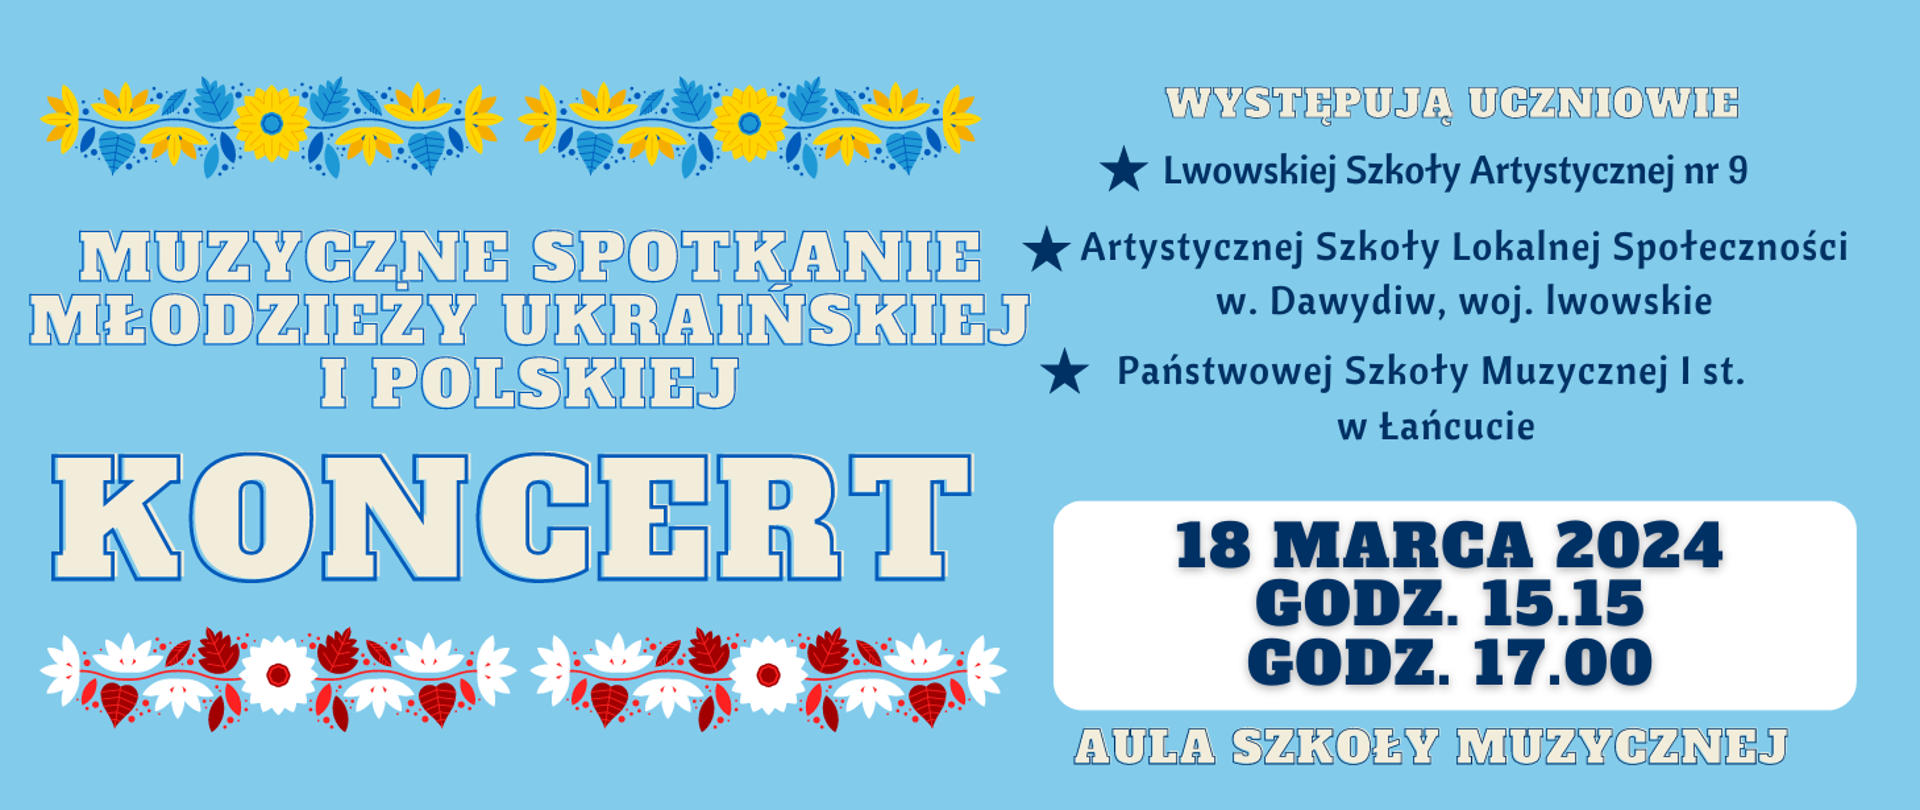 Niebieski plakat z zapowiedzią koncertu młodzieży ukraińskiej 18 marca godz. 15.15 i 17.00